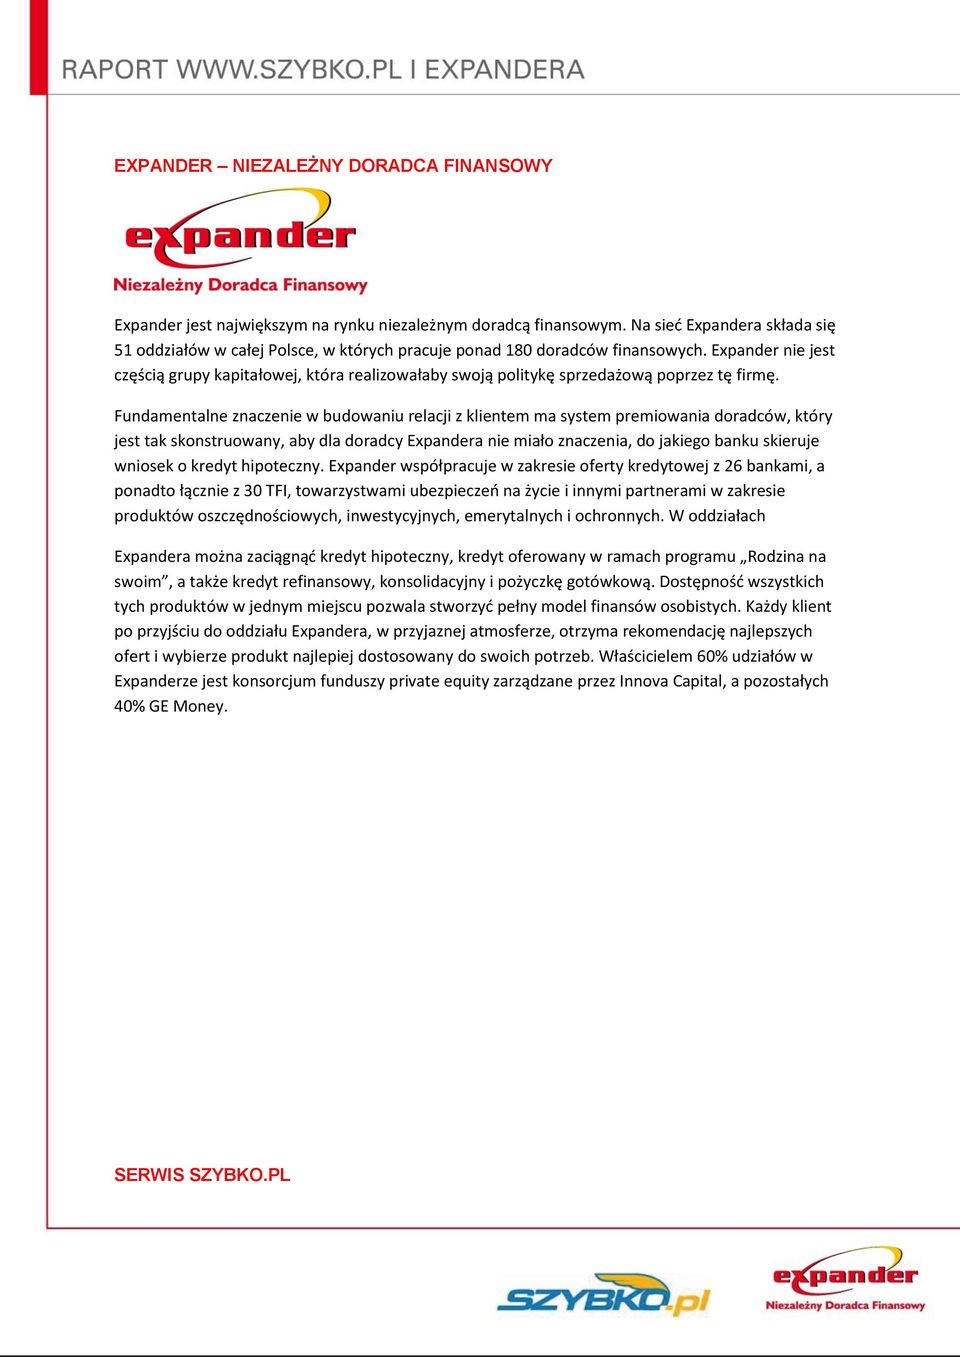 Expander nie jest częścią grupy kapitałowej, która realizowałaby swoją politykę sprzedażową poprzez tę firmę.